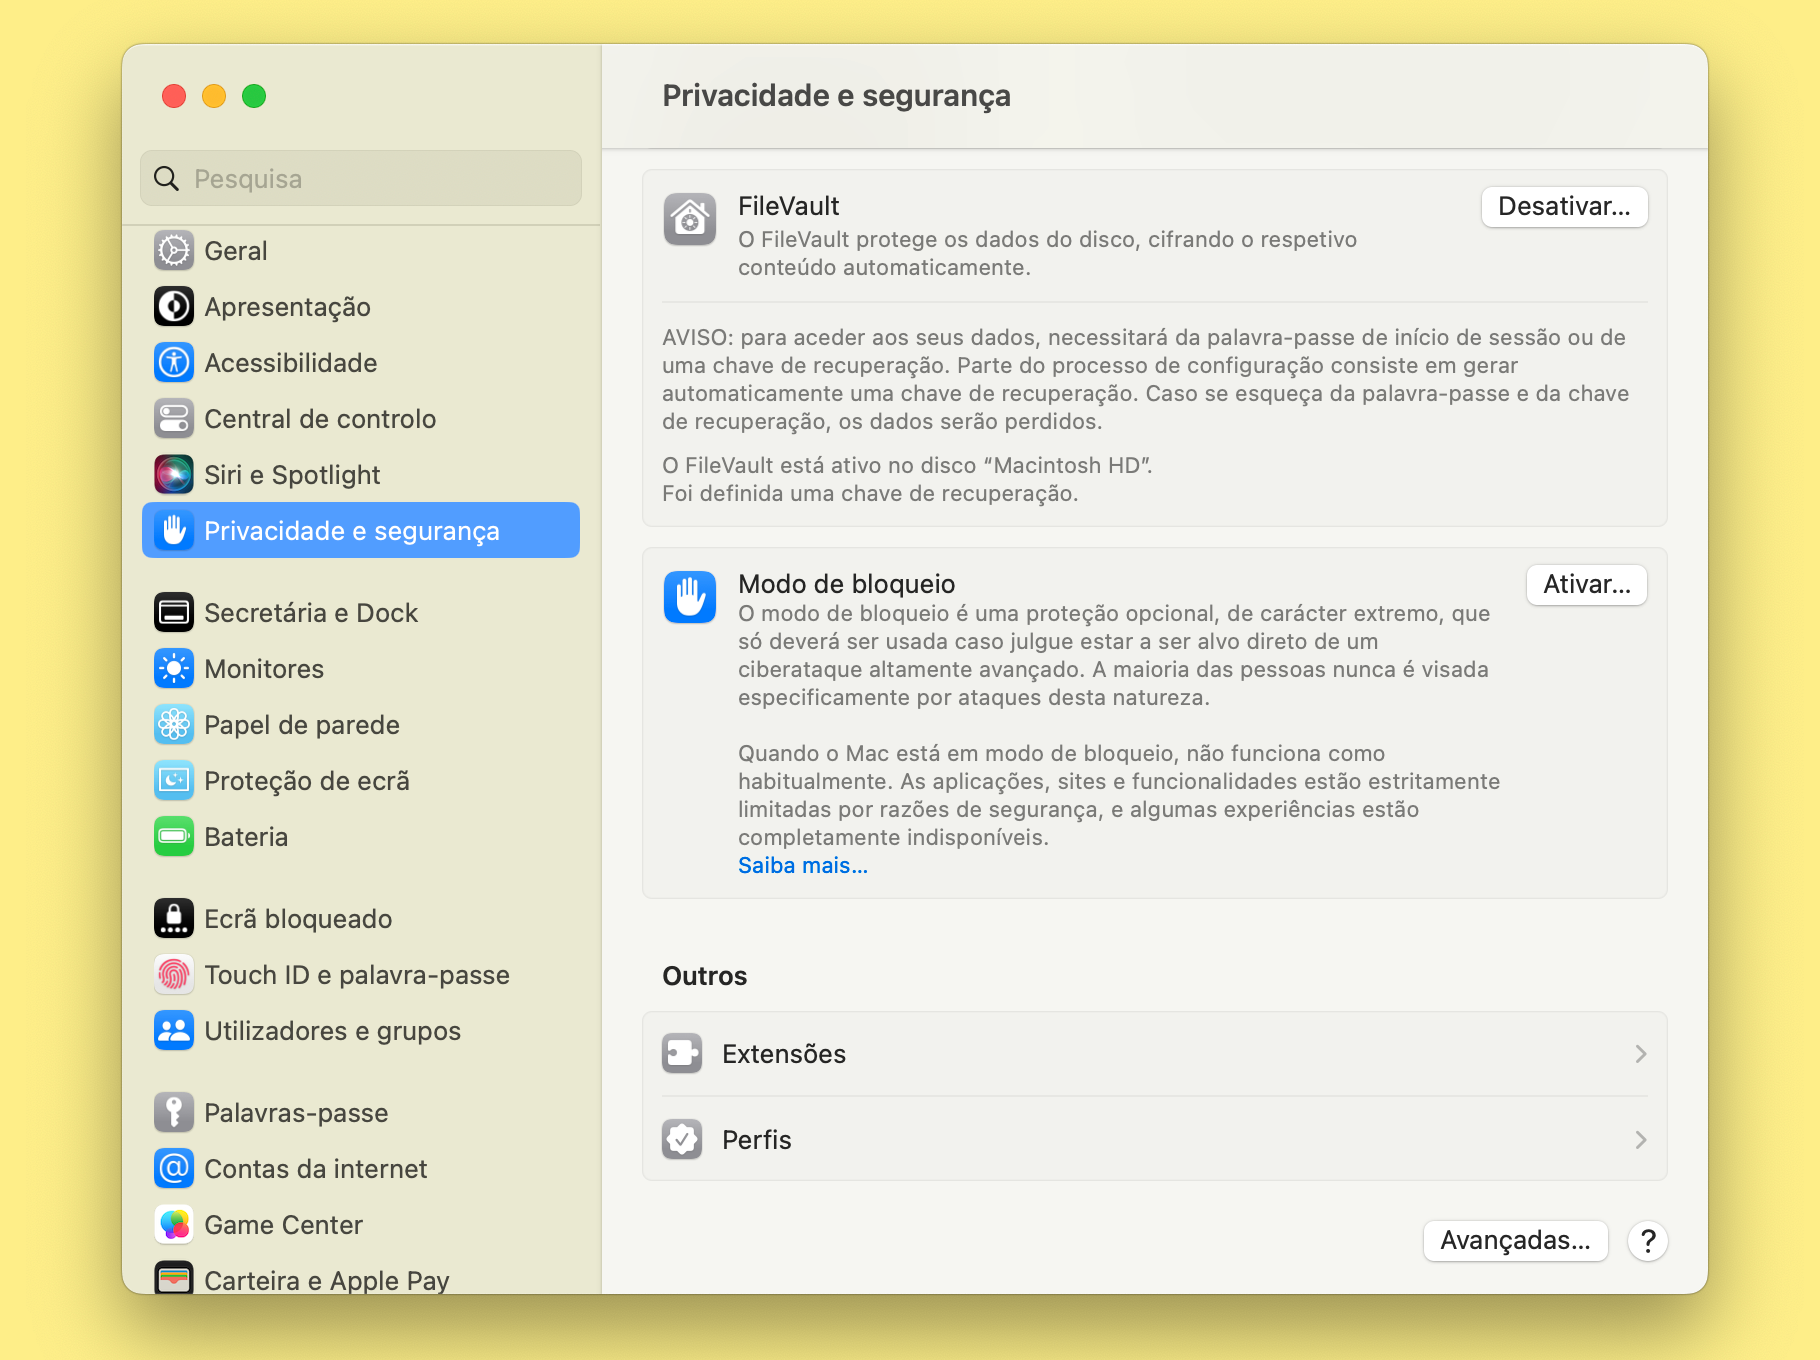 Captura de ecrã das definições de privacidade e segurança do MacBook, destacando a funcionalidade FileVault.